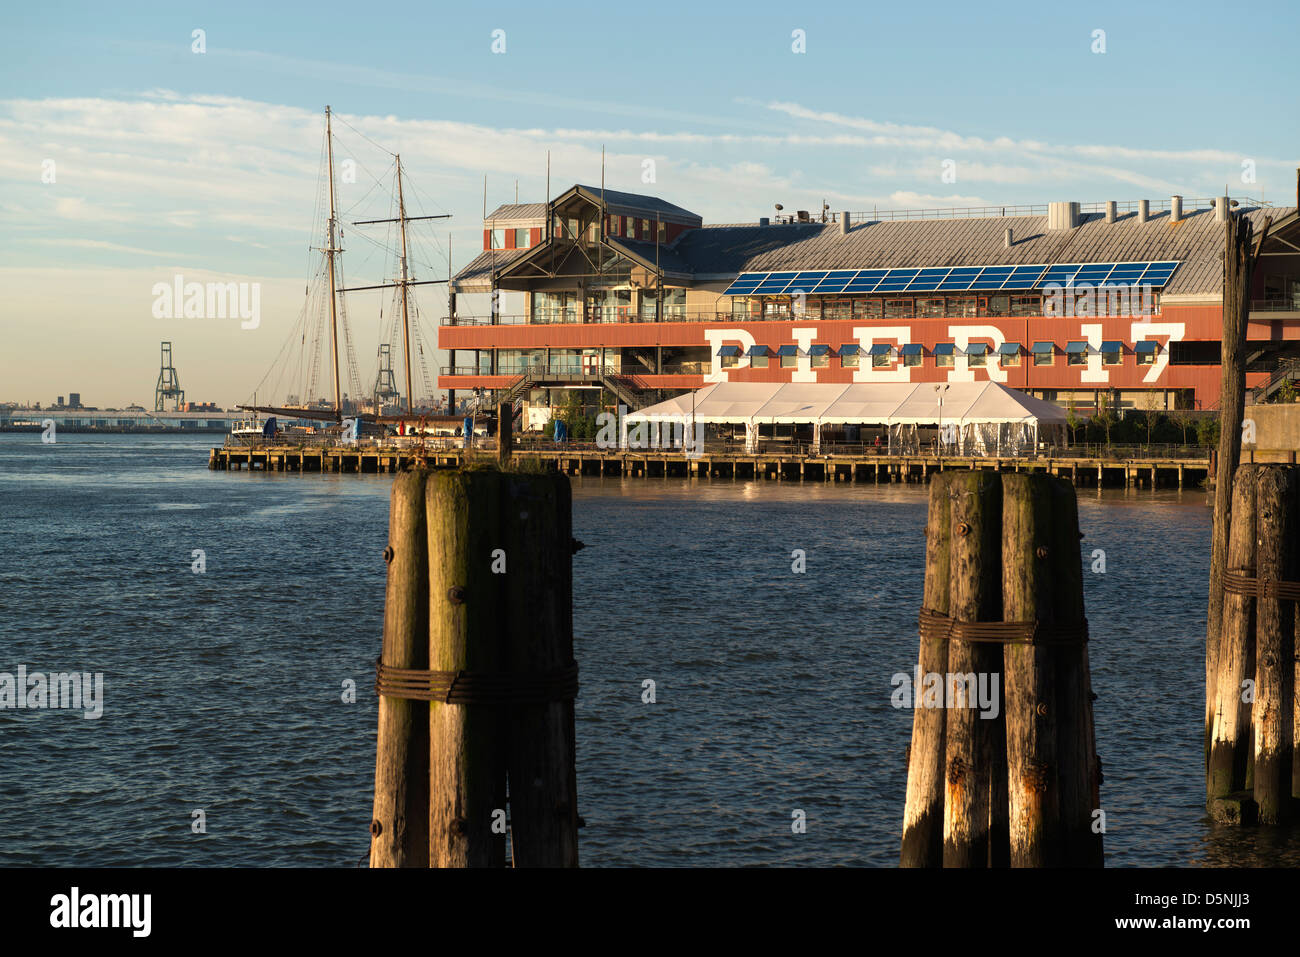 Pier 17, Teil des South Street Seaport mit alten Pylonen im Vordergrund. Stockfoto